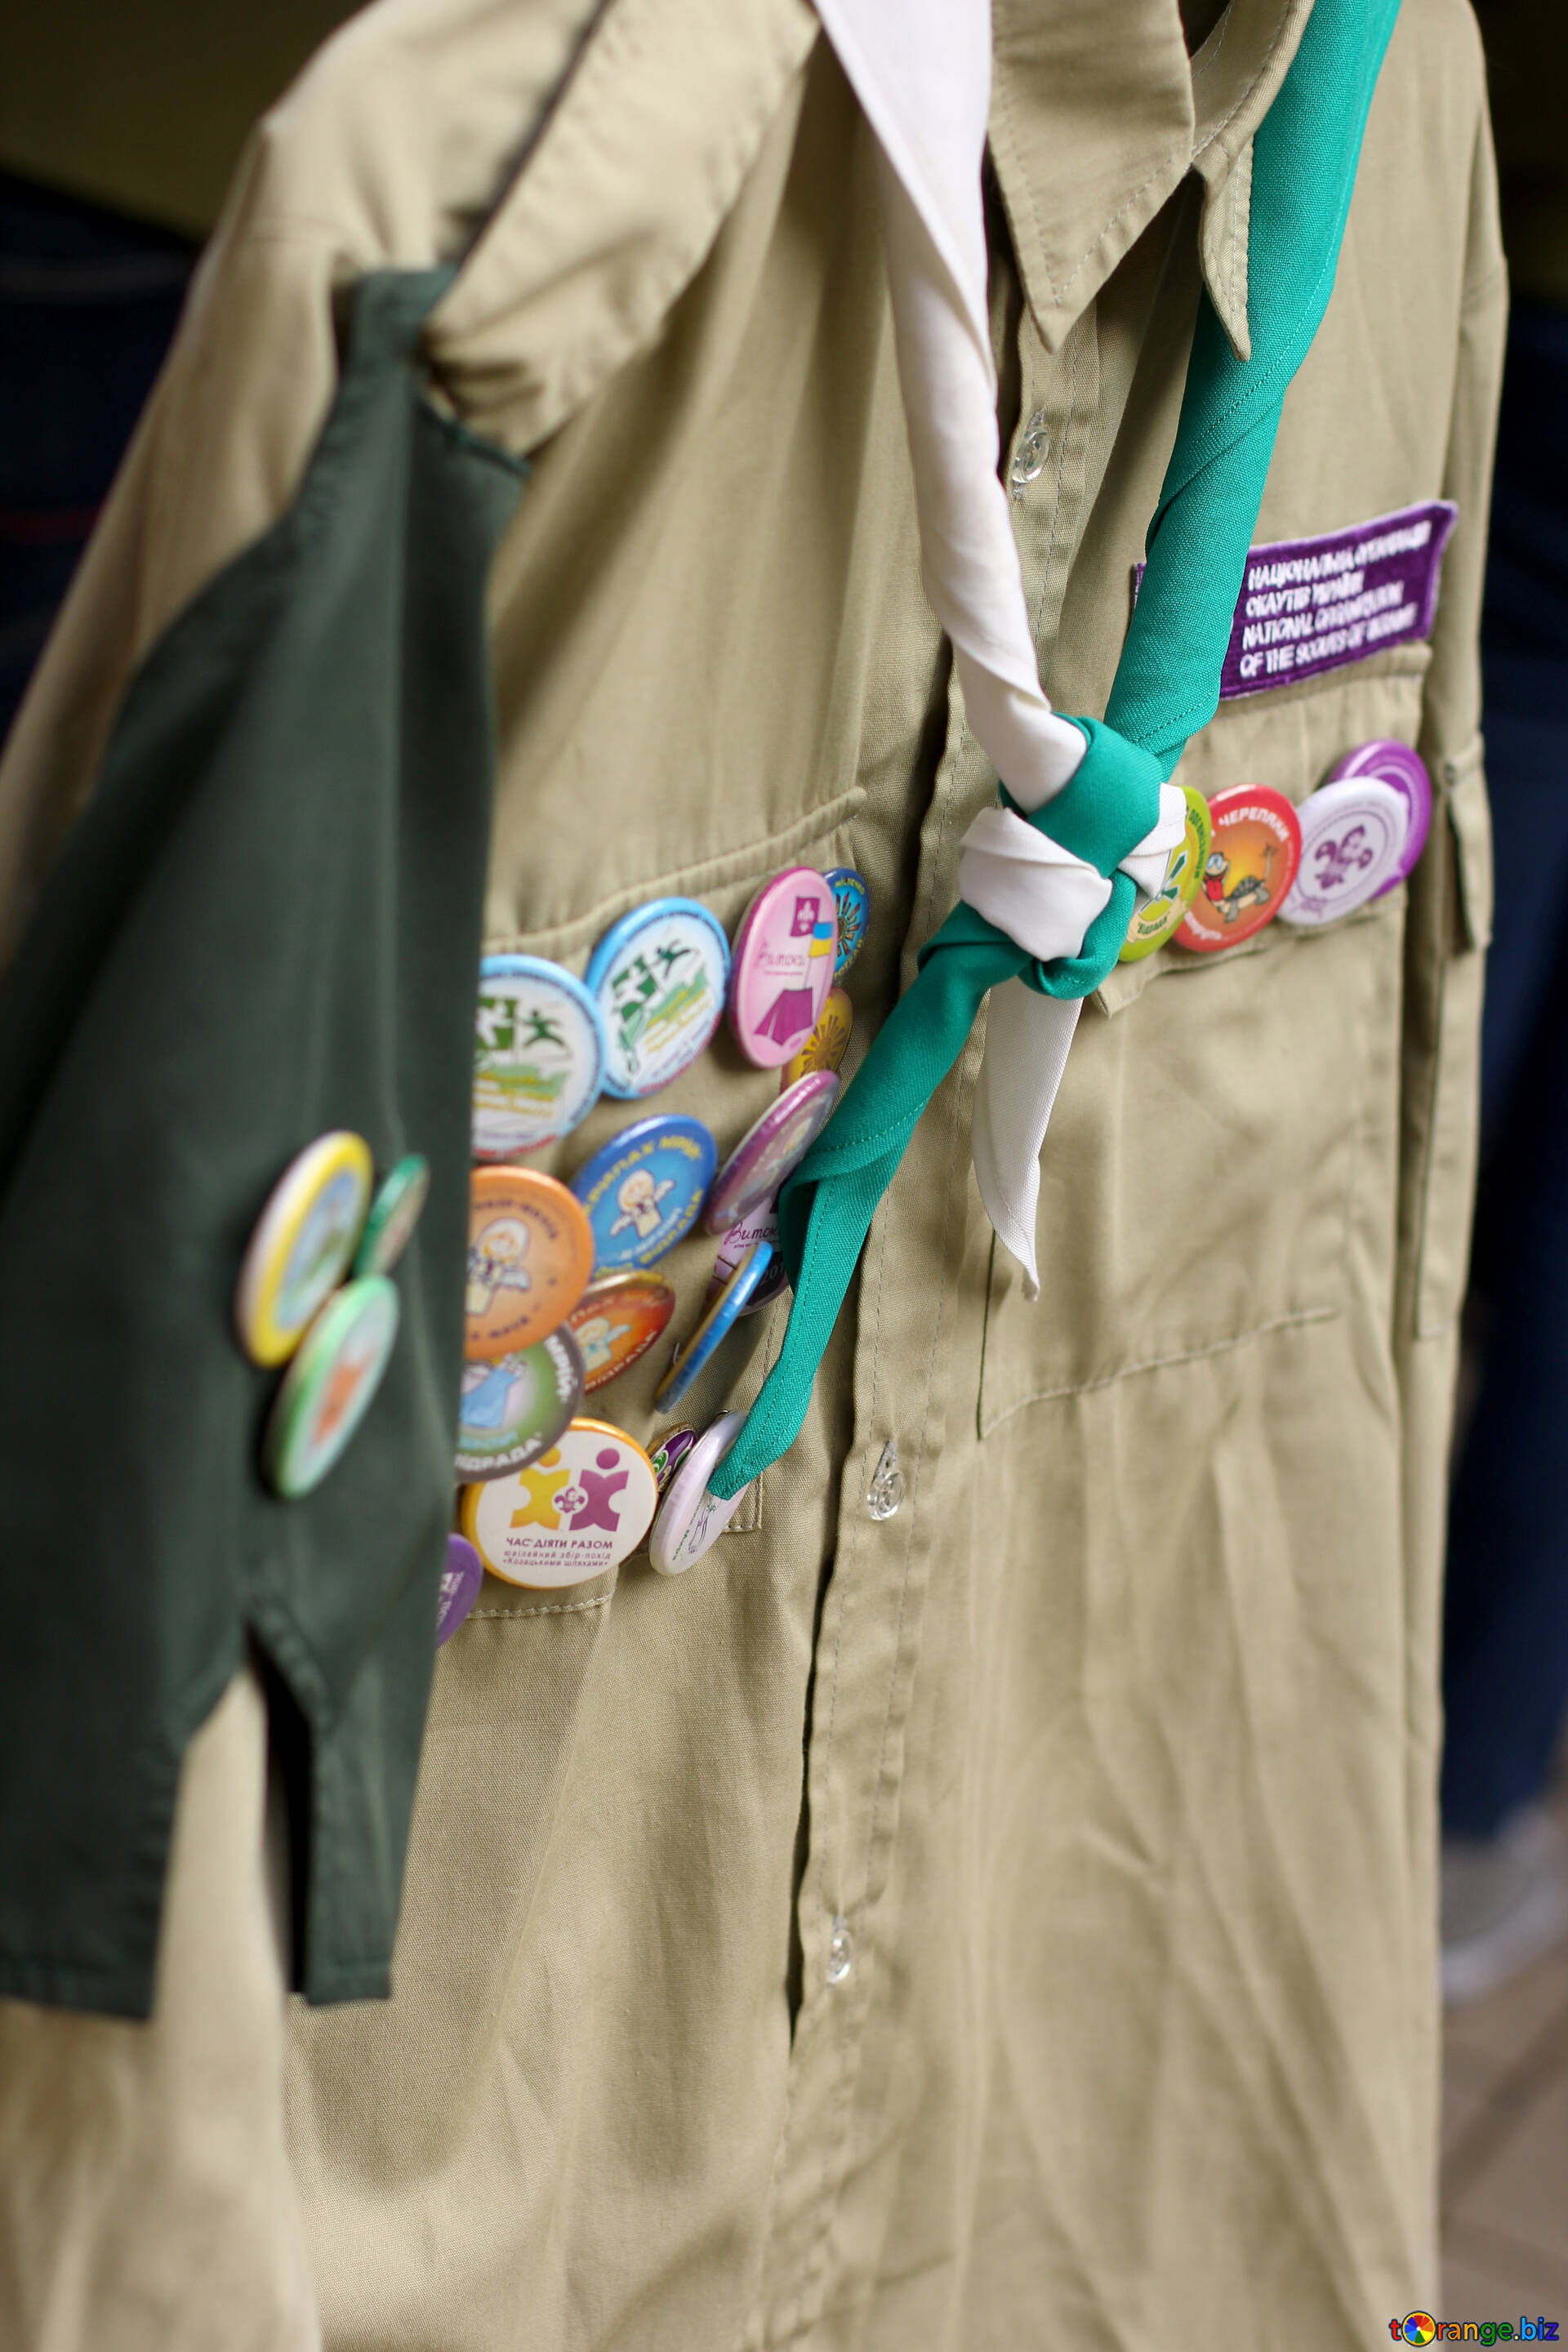 Hueco Cava loco Insignias imagen insignias del explorador en la camisa del uniforme imagens  honores № 51039 | torange.biz